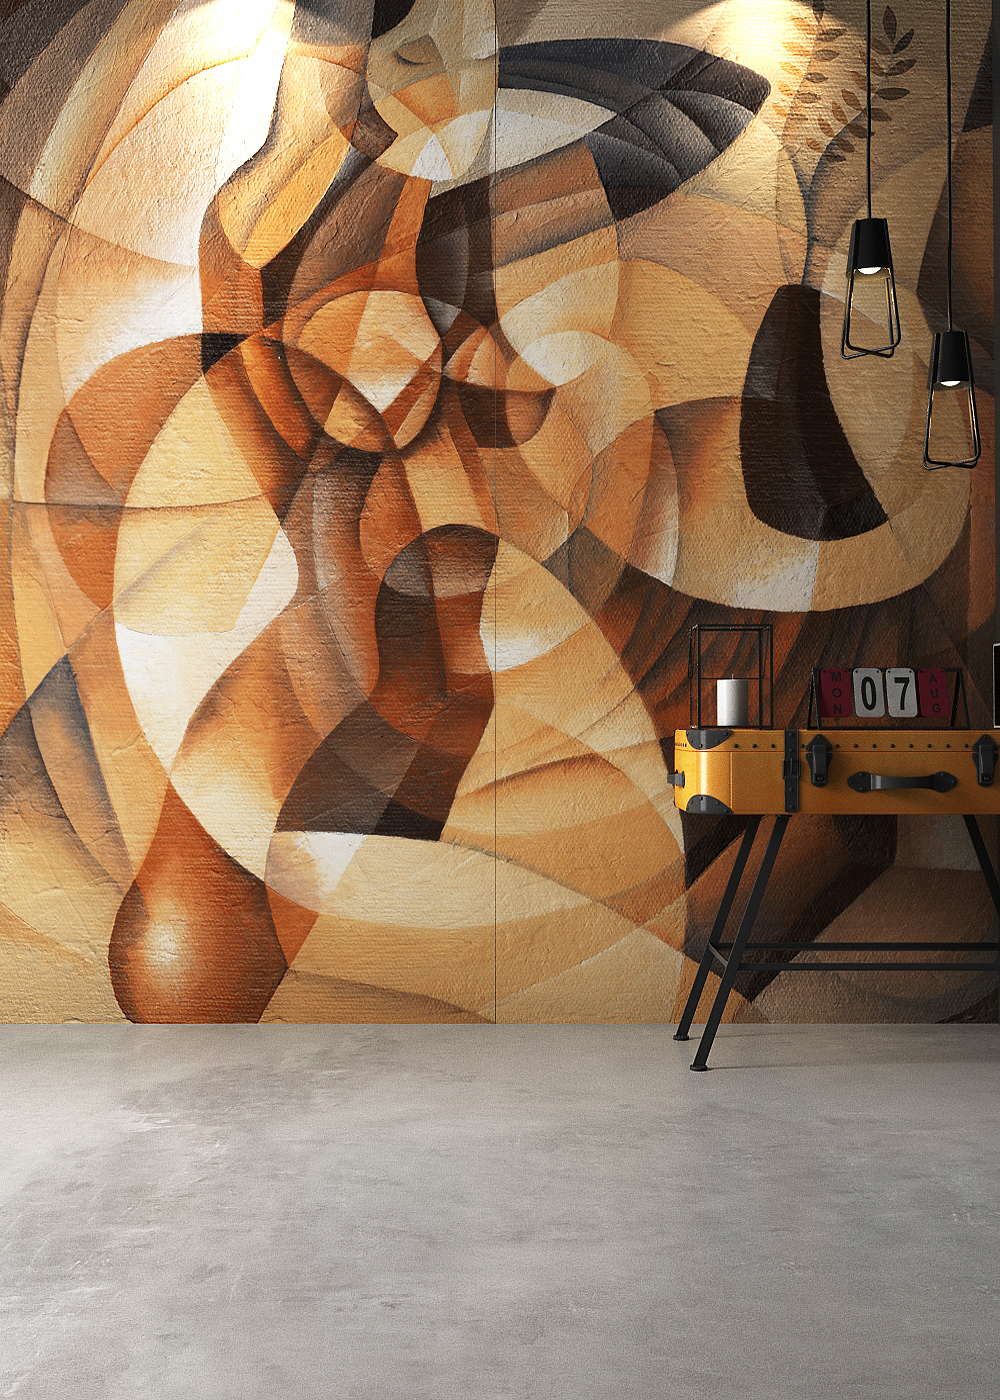 Kru Decor wall installation by Lioli Ceramica